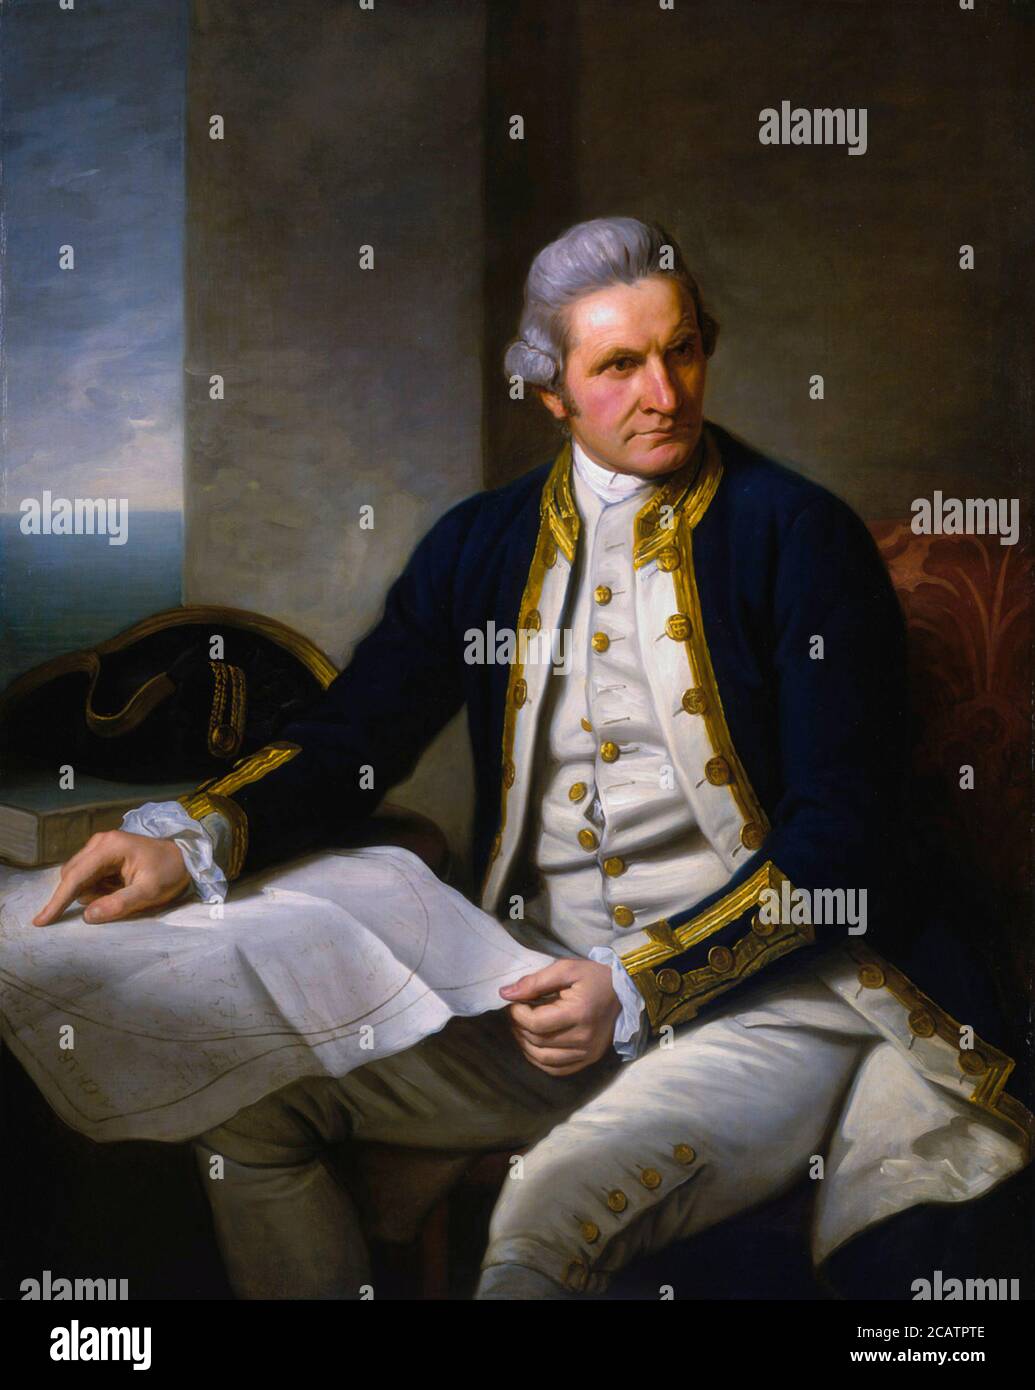 Retrato del Capitán James Cook por Sir Nathaniel Dance-Holland, óleo sobre lienzo, c. 1775, Museo Marítimo Nacional, Greenwich. El capitán James Cook FRS (7 de noviembre de 1728 – 14 de febrero de 1779) fue un explorador británico, navegante, cartógrafo y capitán de la Royal Navy británica. Foto de stock